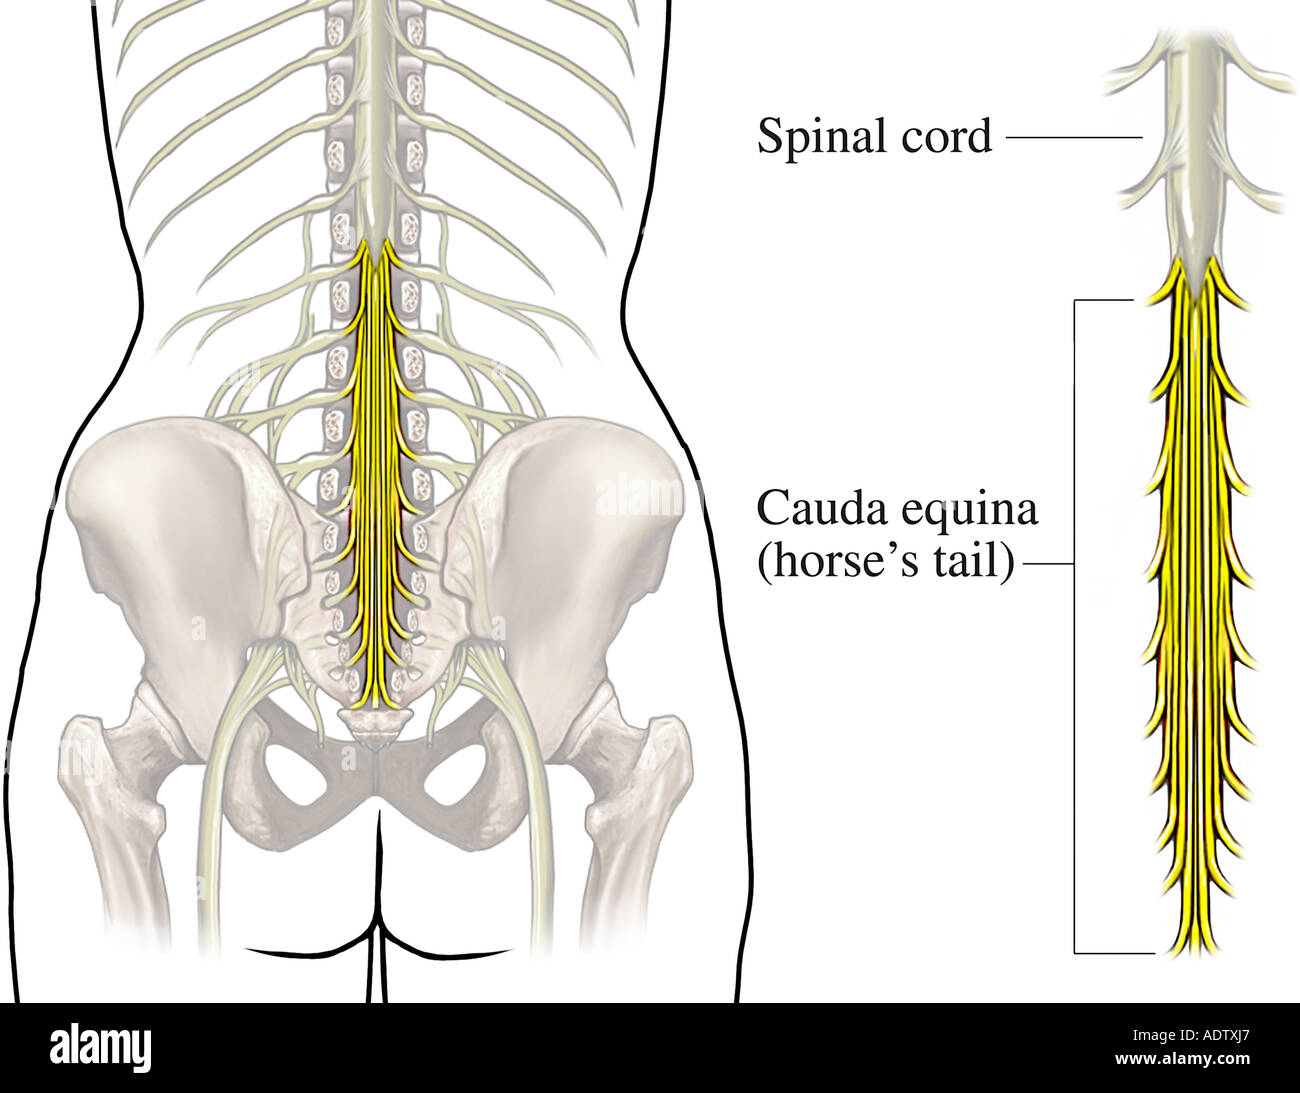 Корешки поясницы. Пояснично-крестцовый отдел спинного мозга. Седалищный нерв и конский хвост. Конский хвост кауда эквина. Спинной мозг конский хвост седалищный нерв.